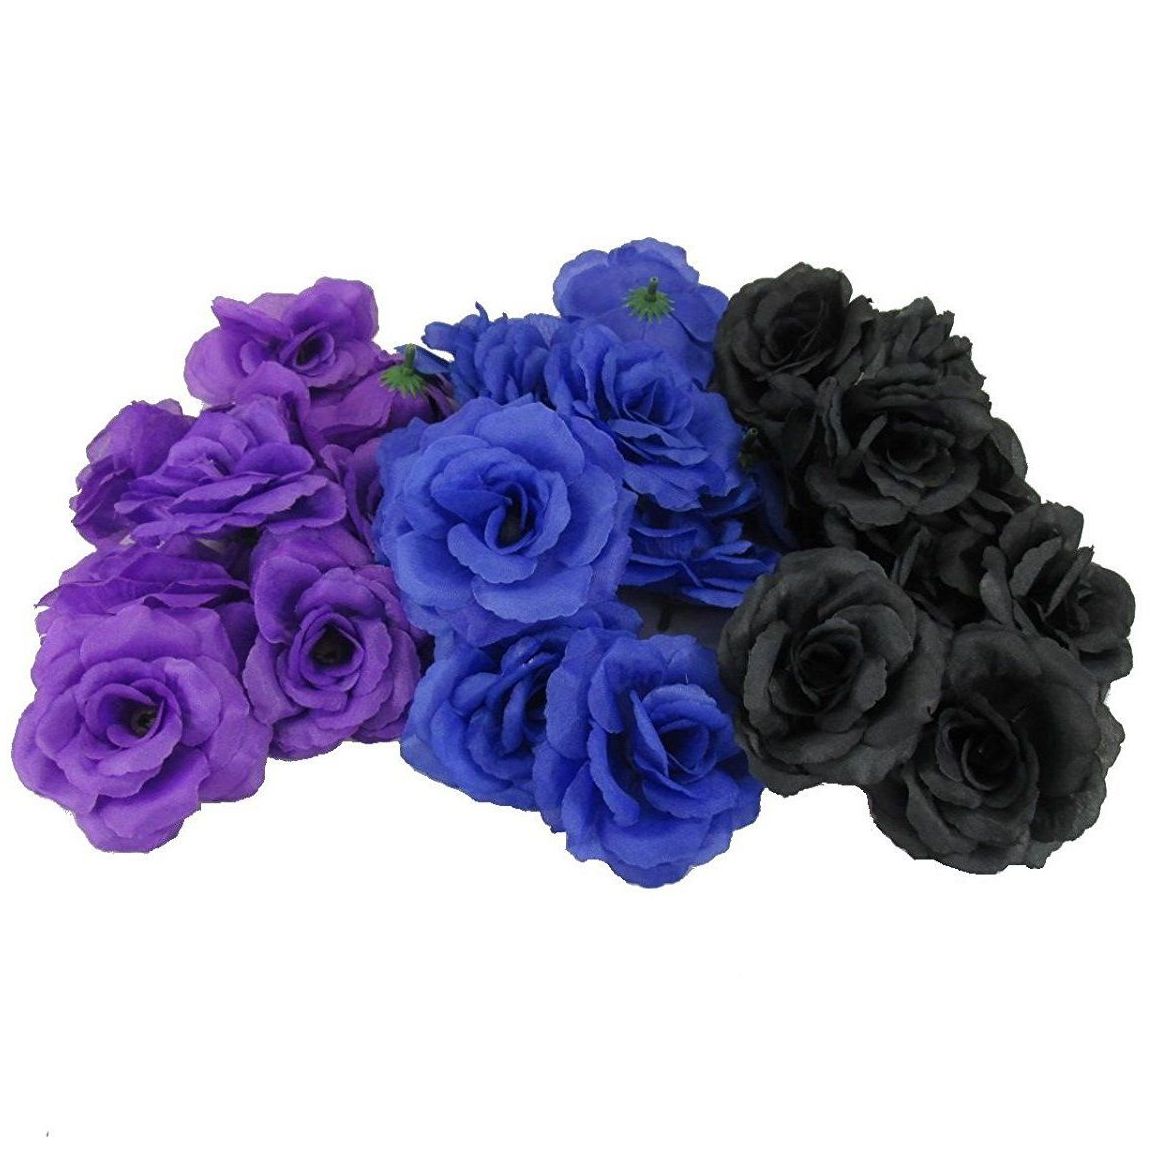 楽天市場 黒のばら 造花 全長67cm 黒のローズ 黒のばら 花径約12 5cm A 造花の店ａｚｕｍａ